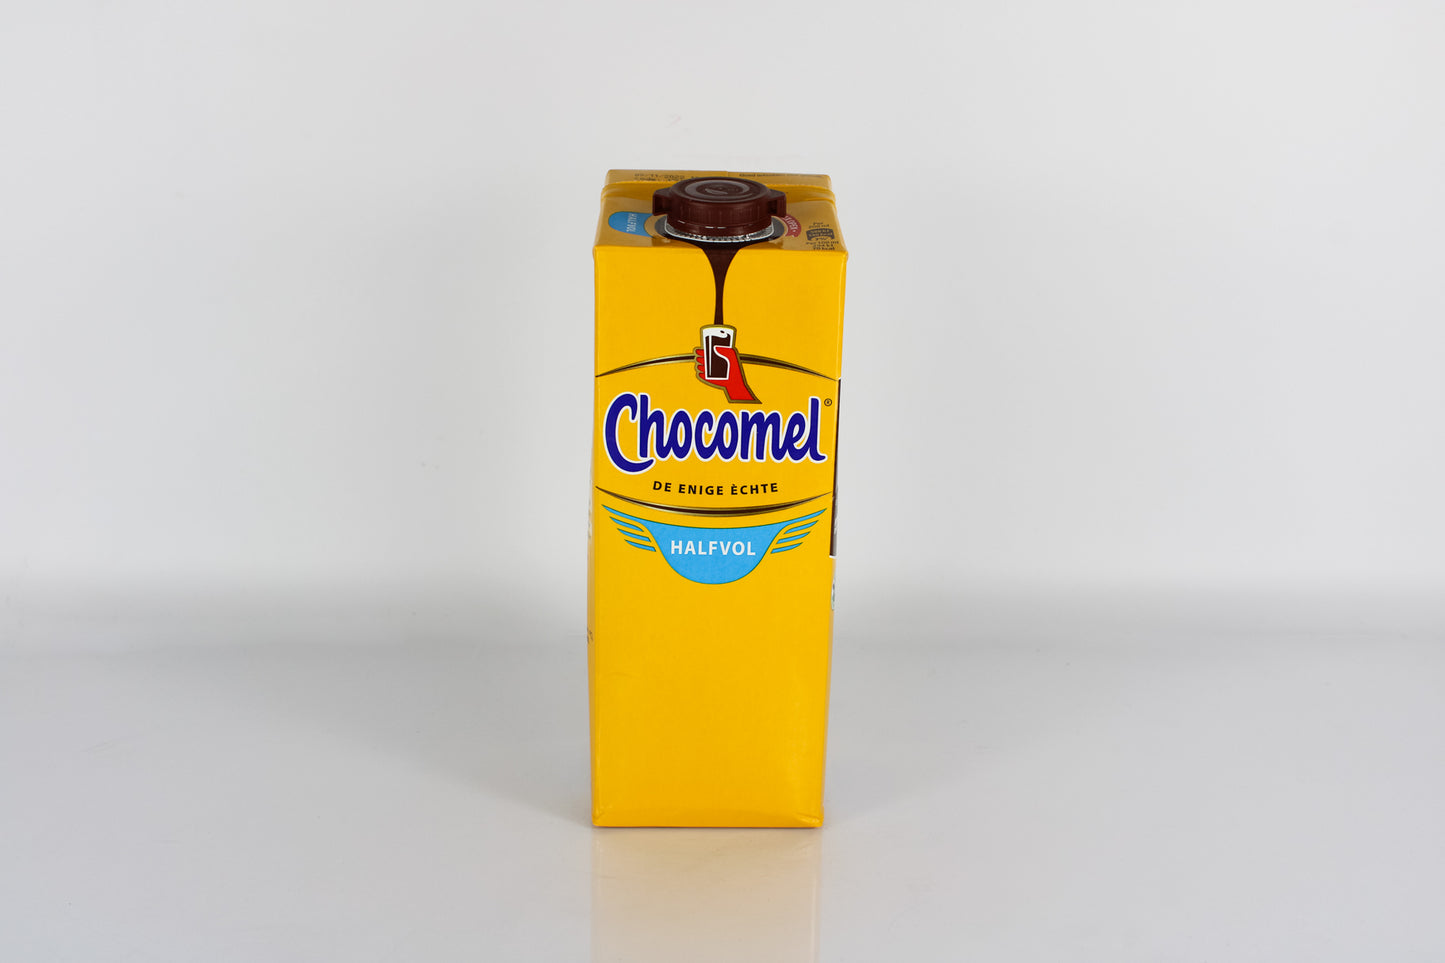 Chocomel Chocolate Milk Low Fat (half vol) 1L